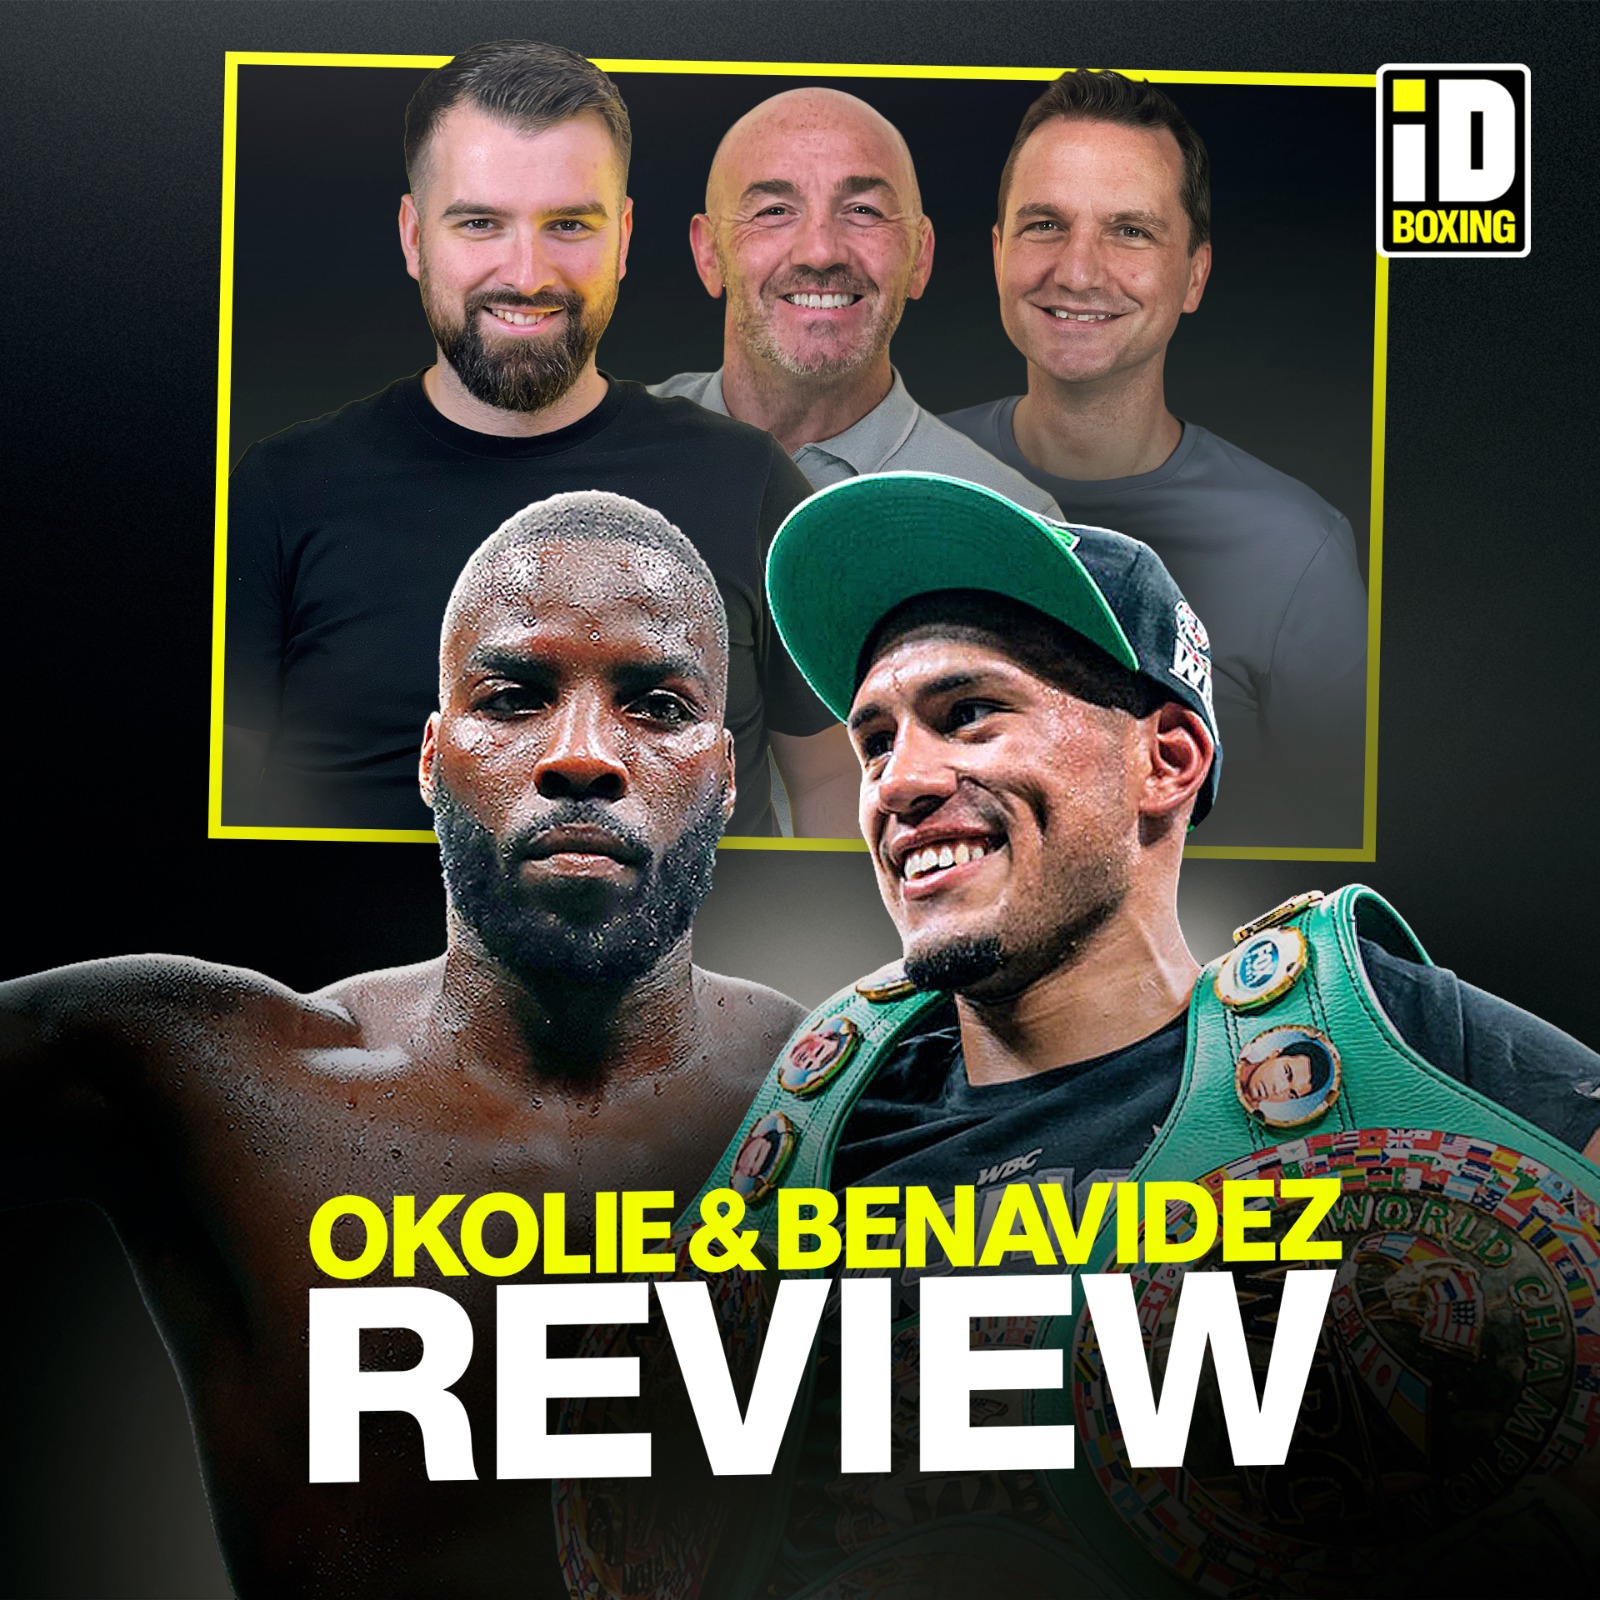 Review Show: Benavidez vs Plant & Okolie vs Light